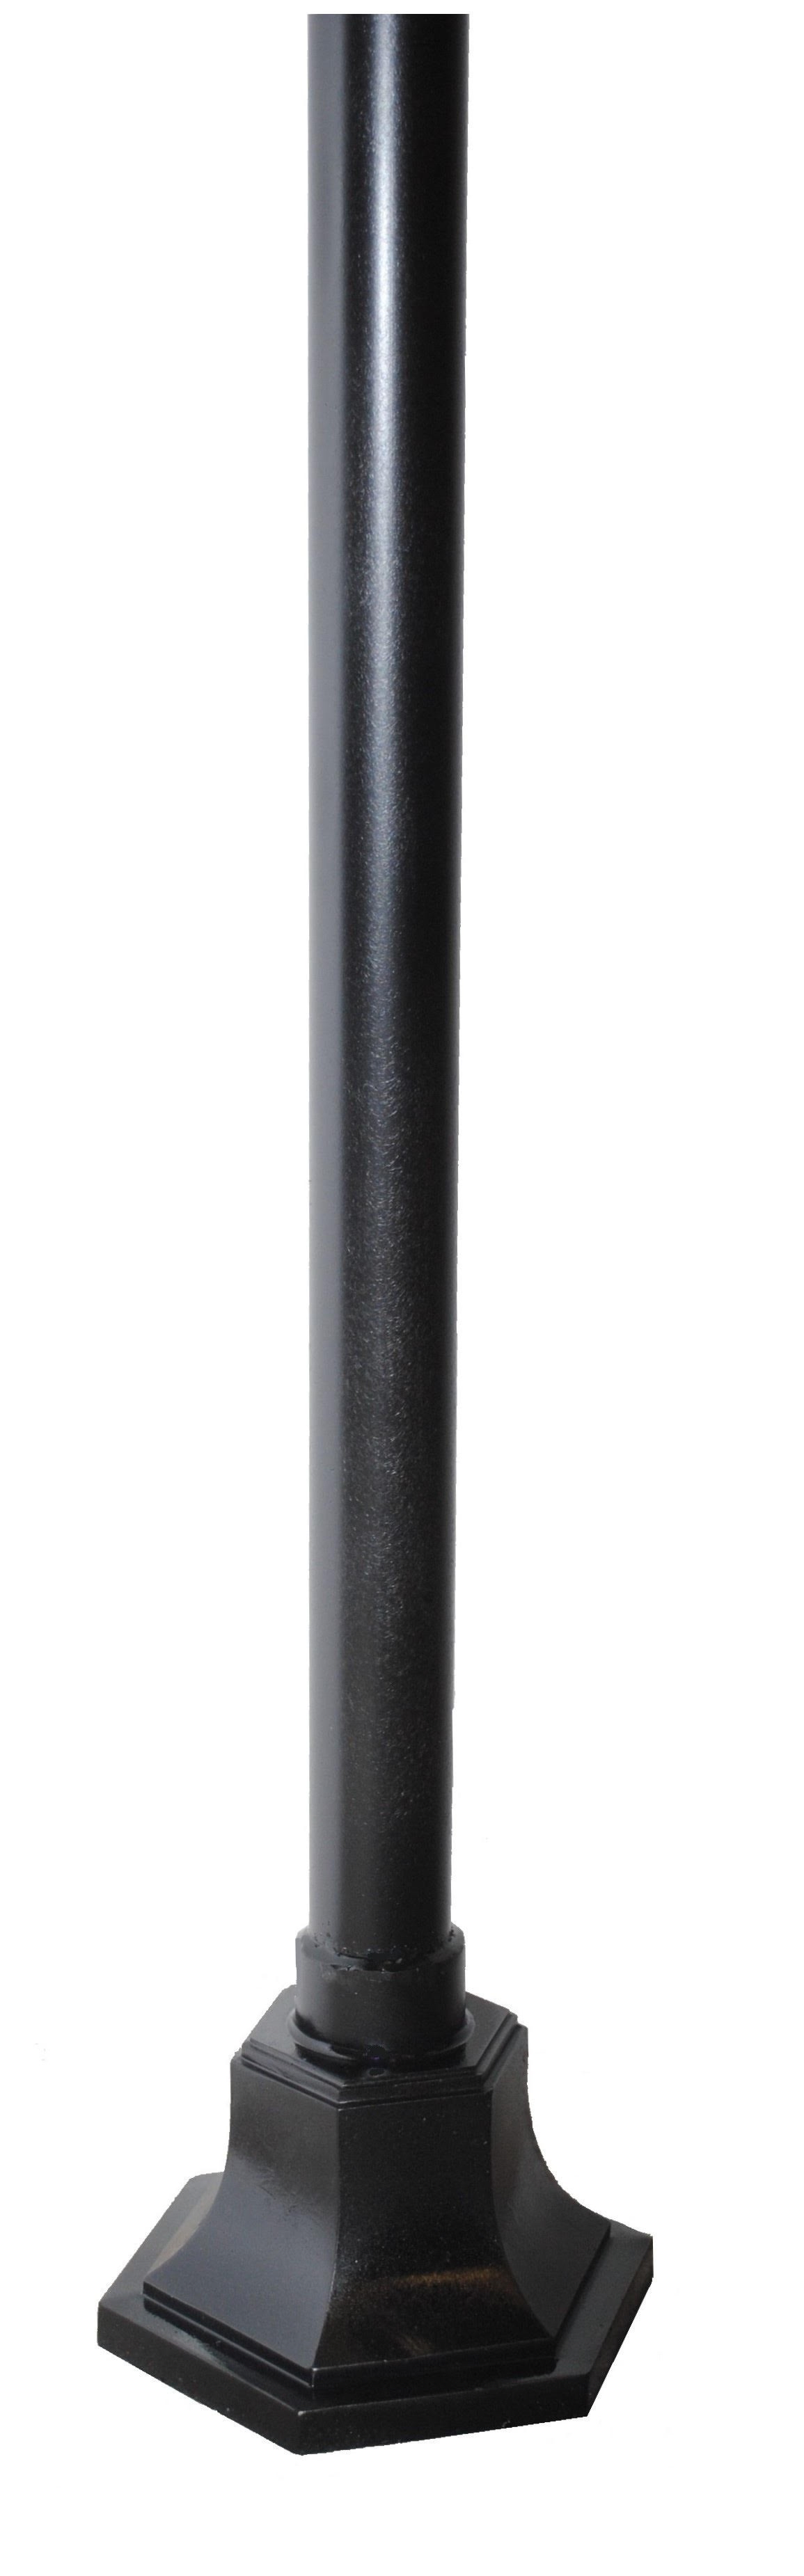 ZL-500 Commercial Grade Surface Mount Cast Aluminum Pole